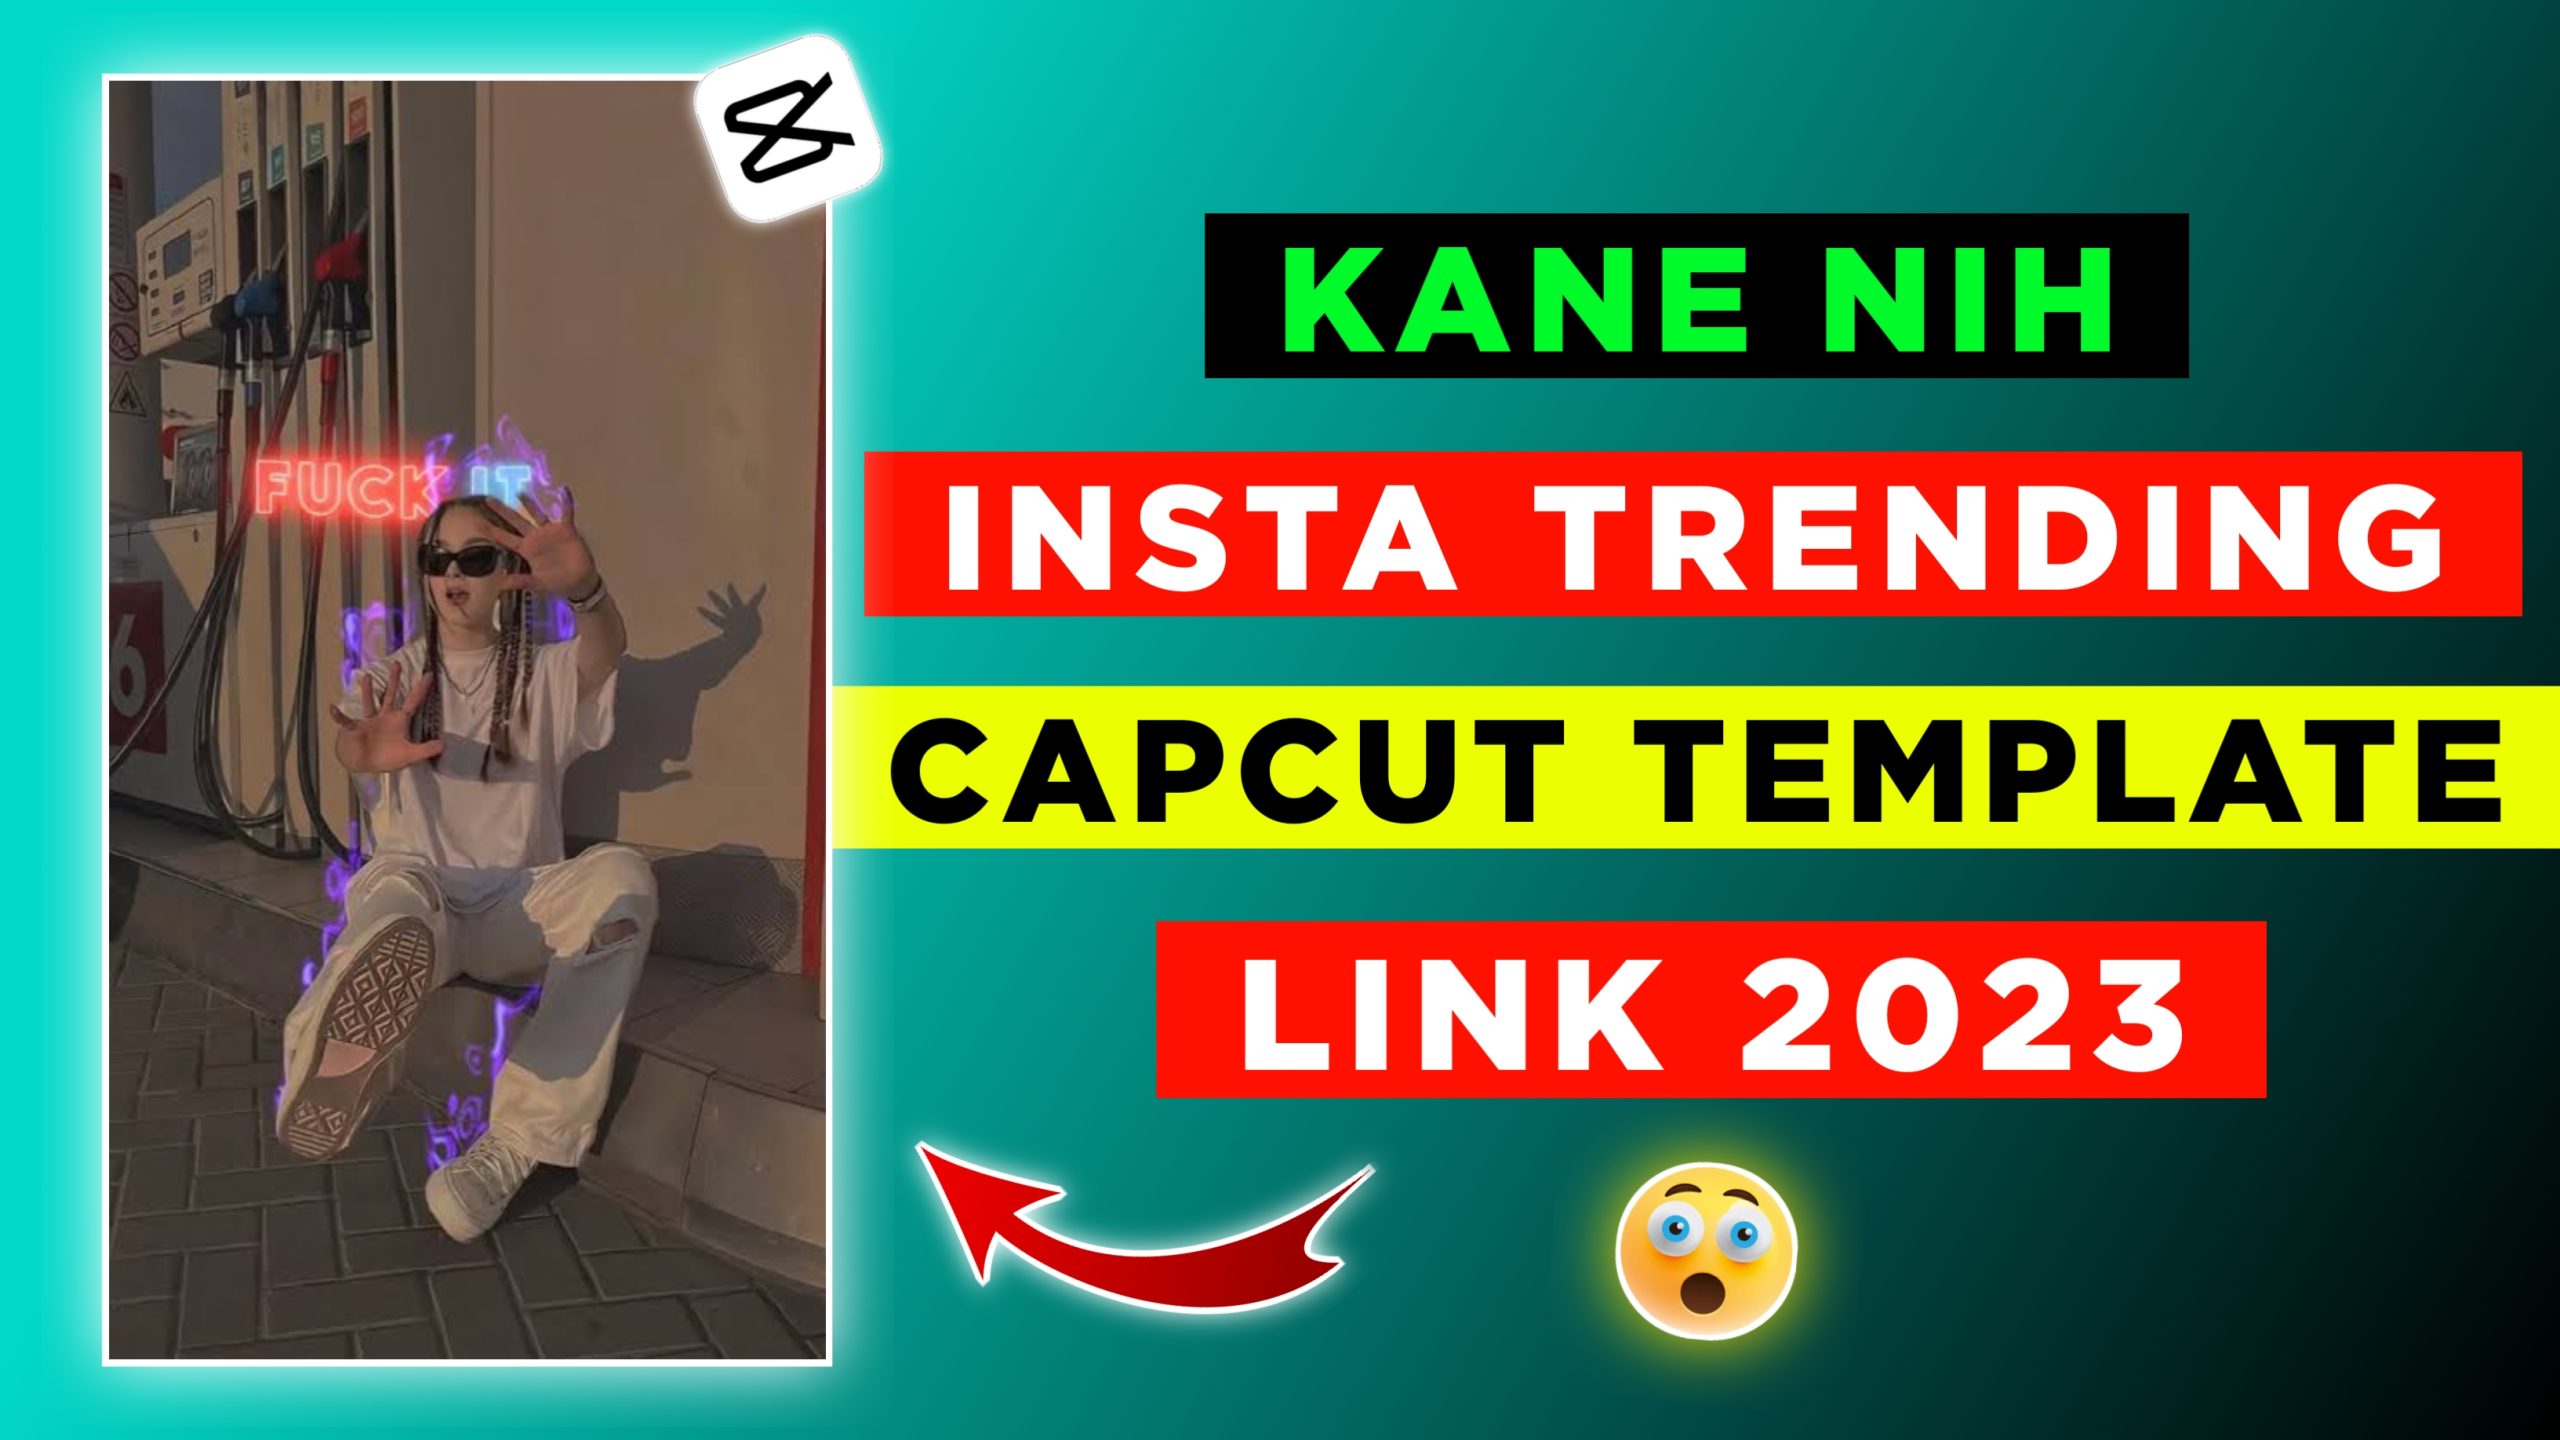 Kane Nih CapCut Template Link 2023